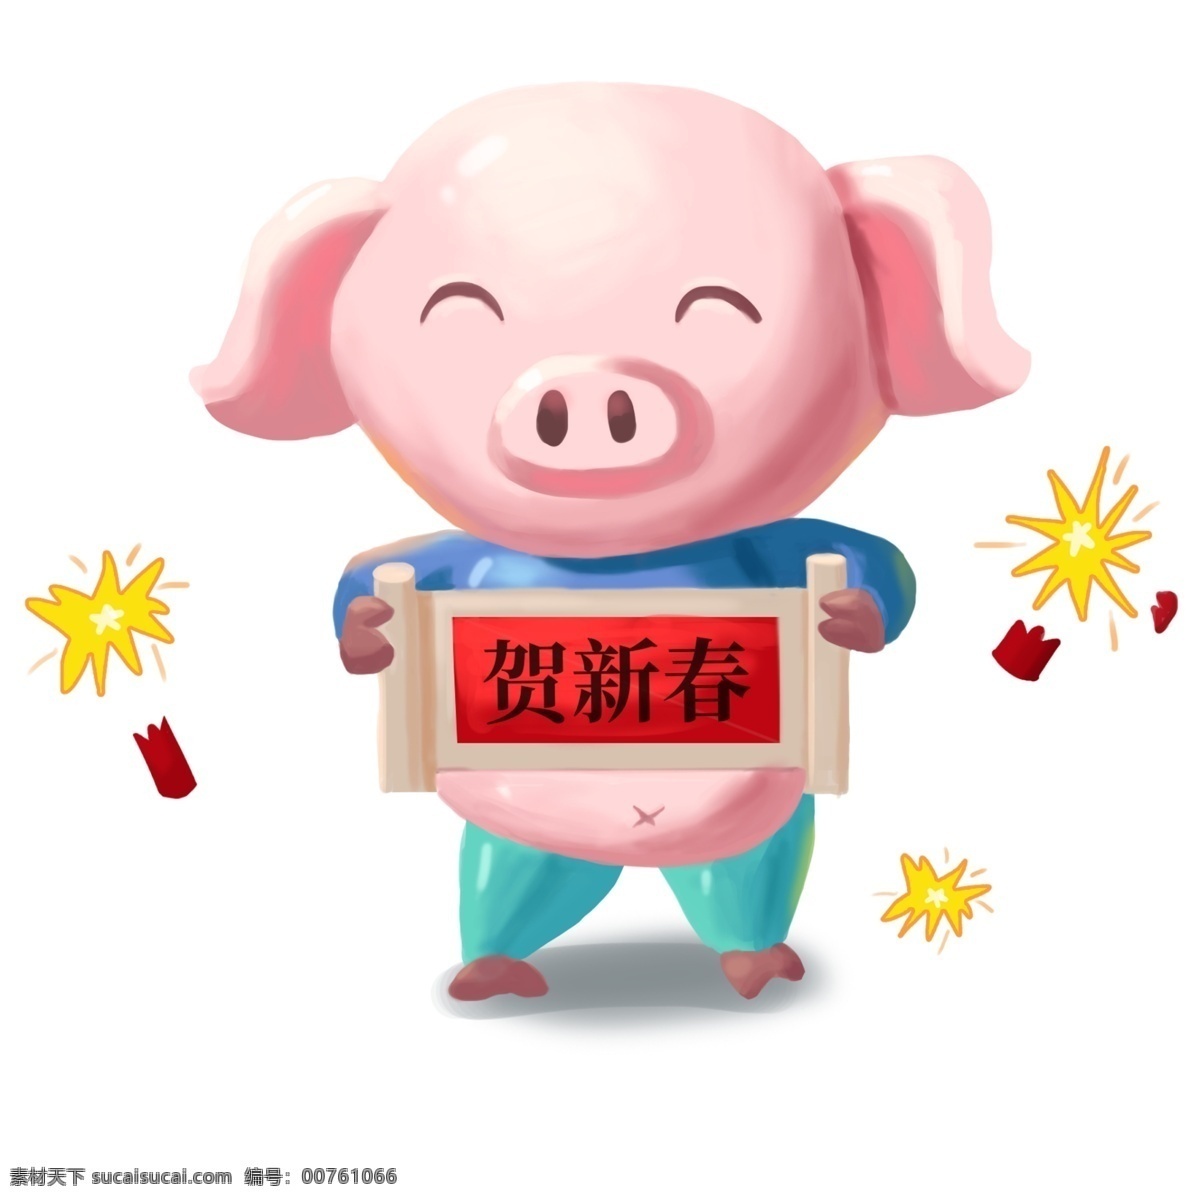 猪年 手绘 肥猪 拜年 卡通 立体 卷轴 鞭炮 庆祝 2019 猪八戒 贺新春 春联 新年